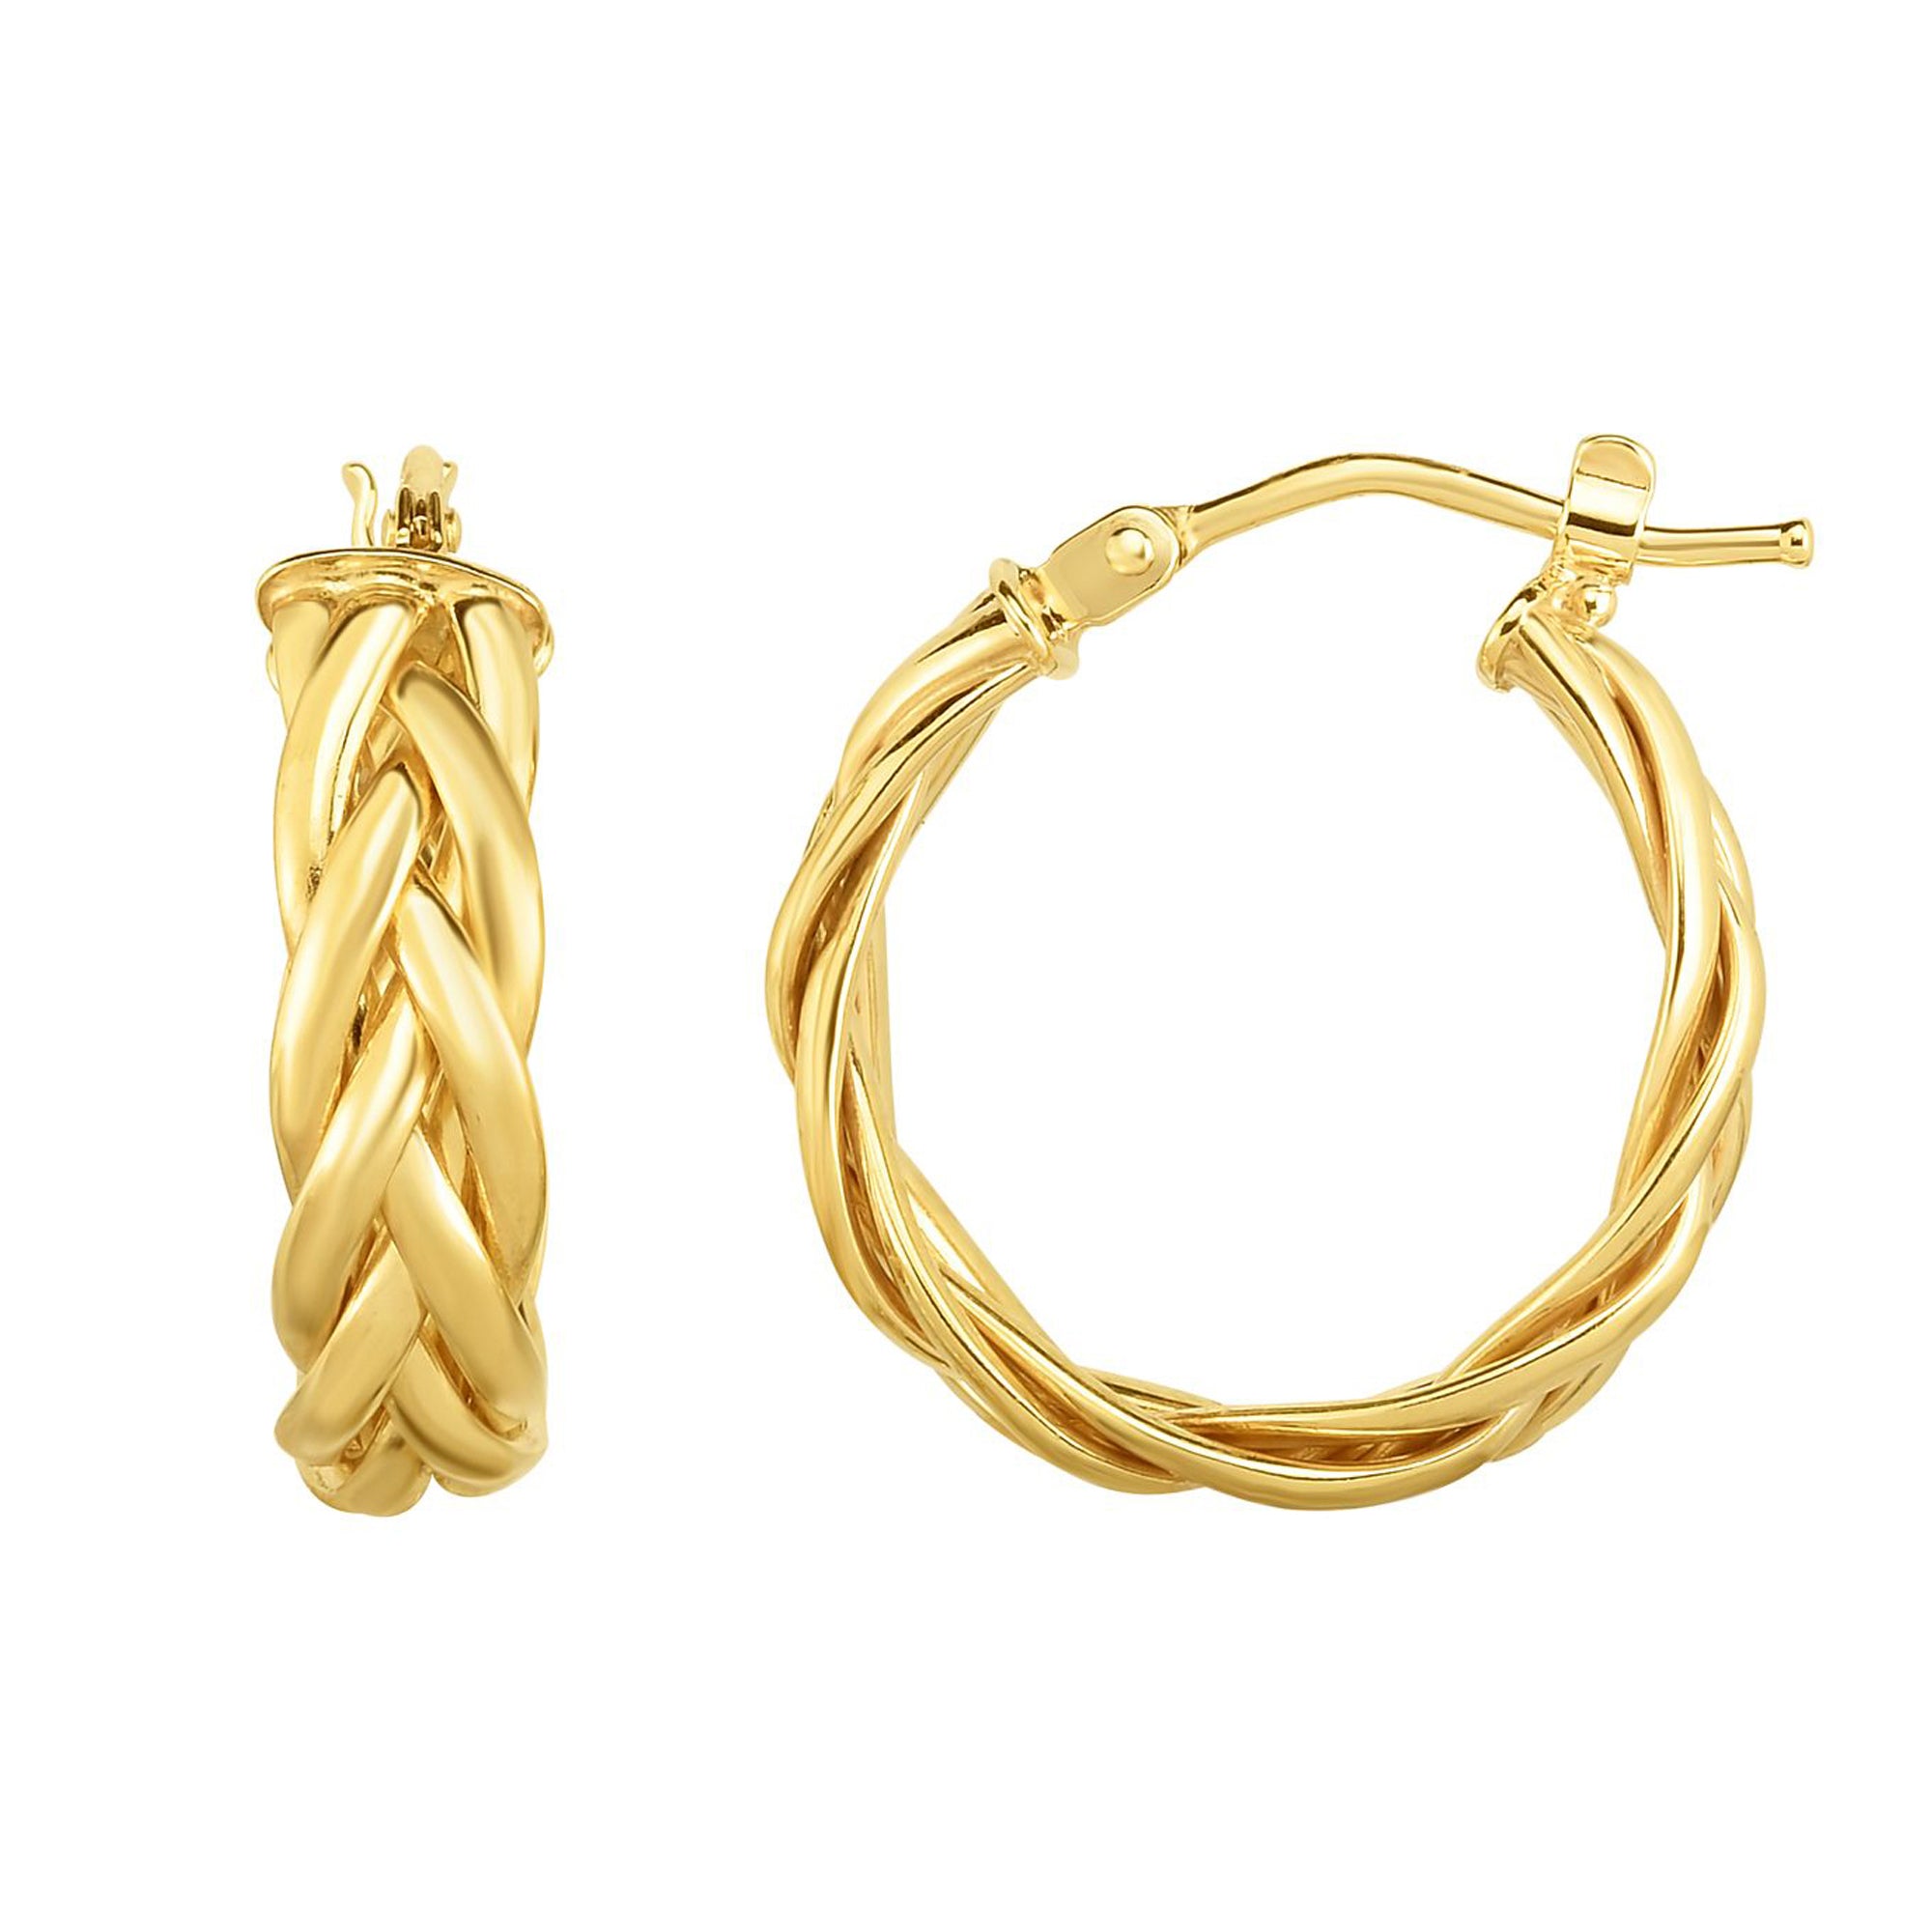 14K Gold Yellow Finish Hoop Fancy Earrings, Diameter 15mm – JewelryAffairs